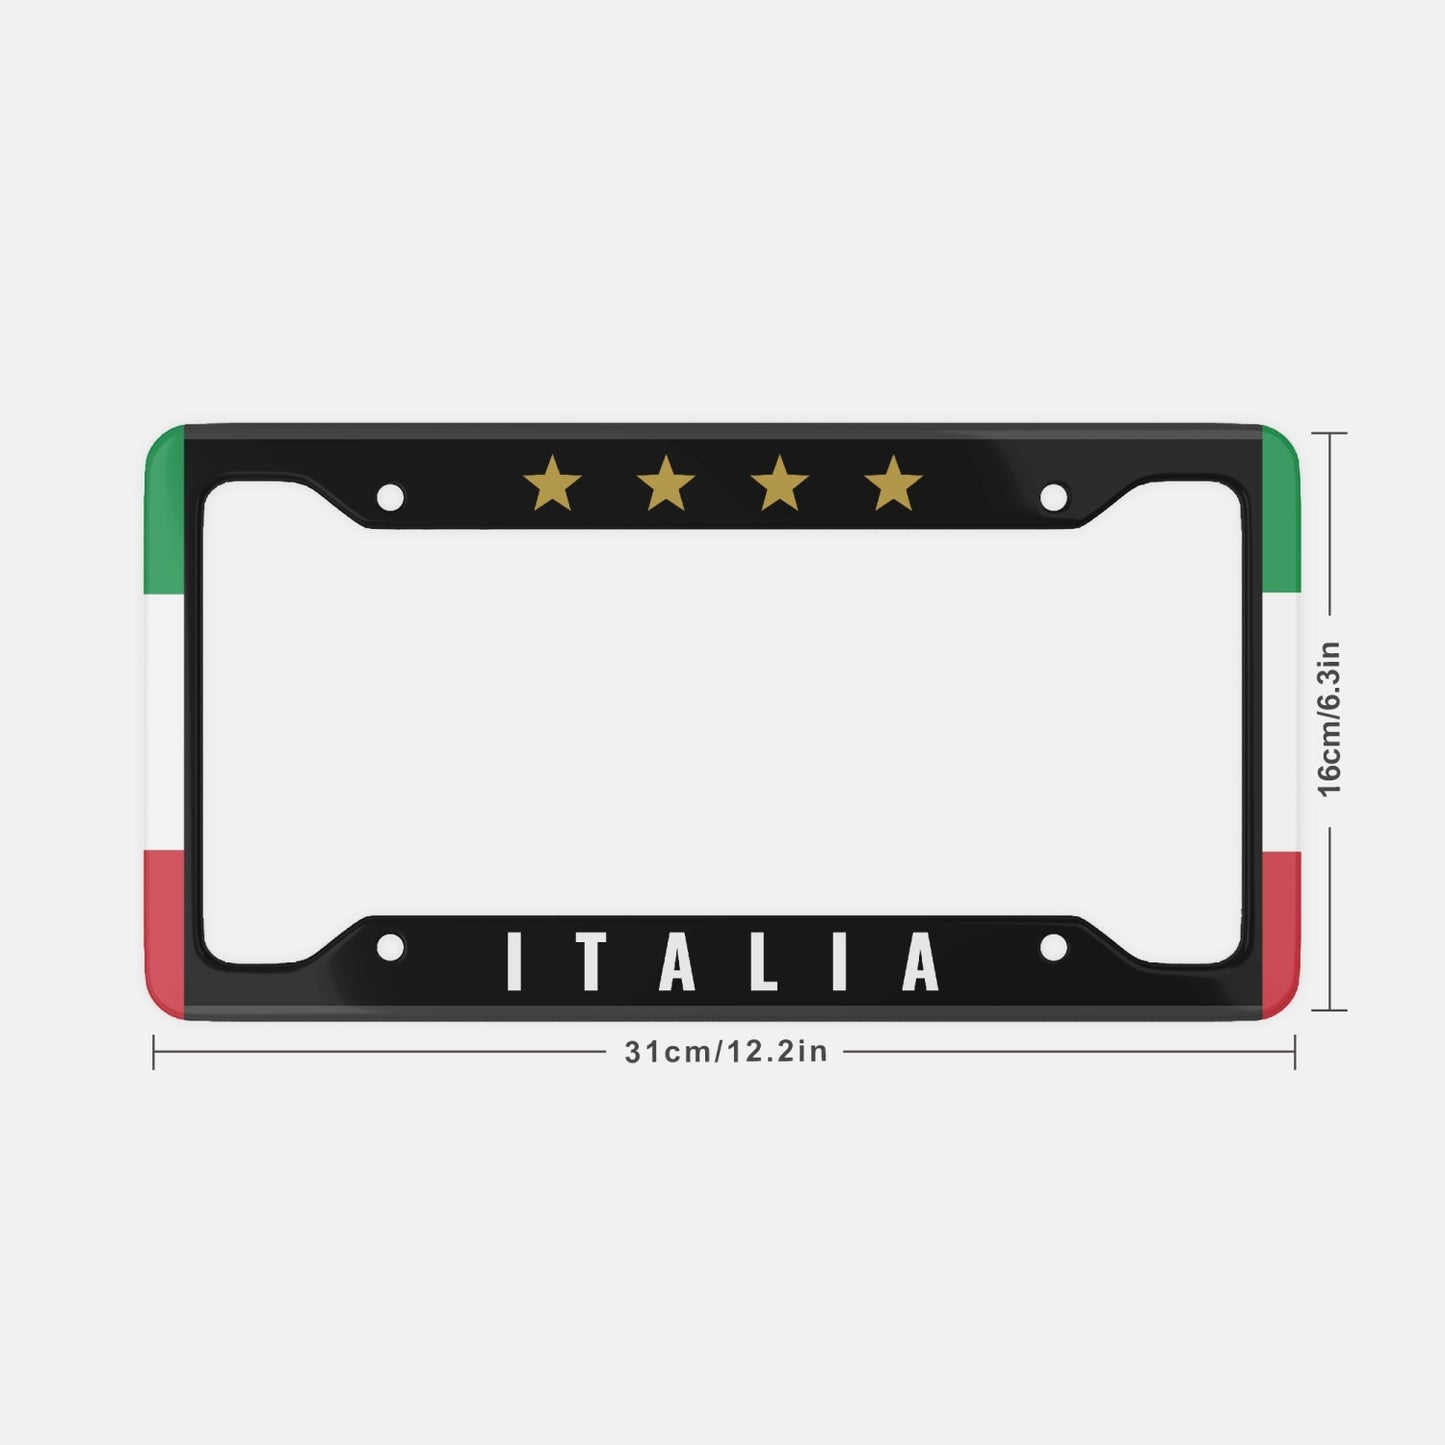 Italy 4 Stars Black - License Plate Frame